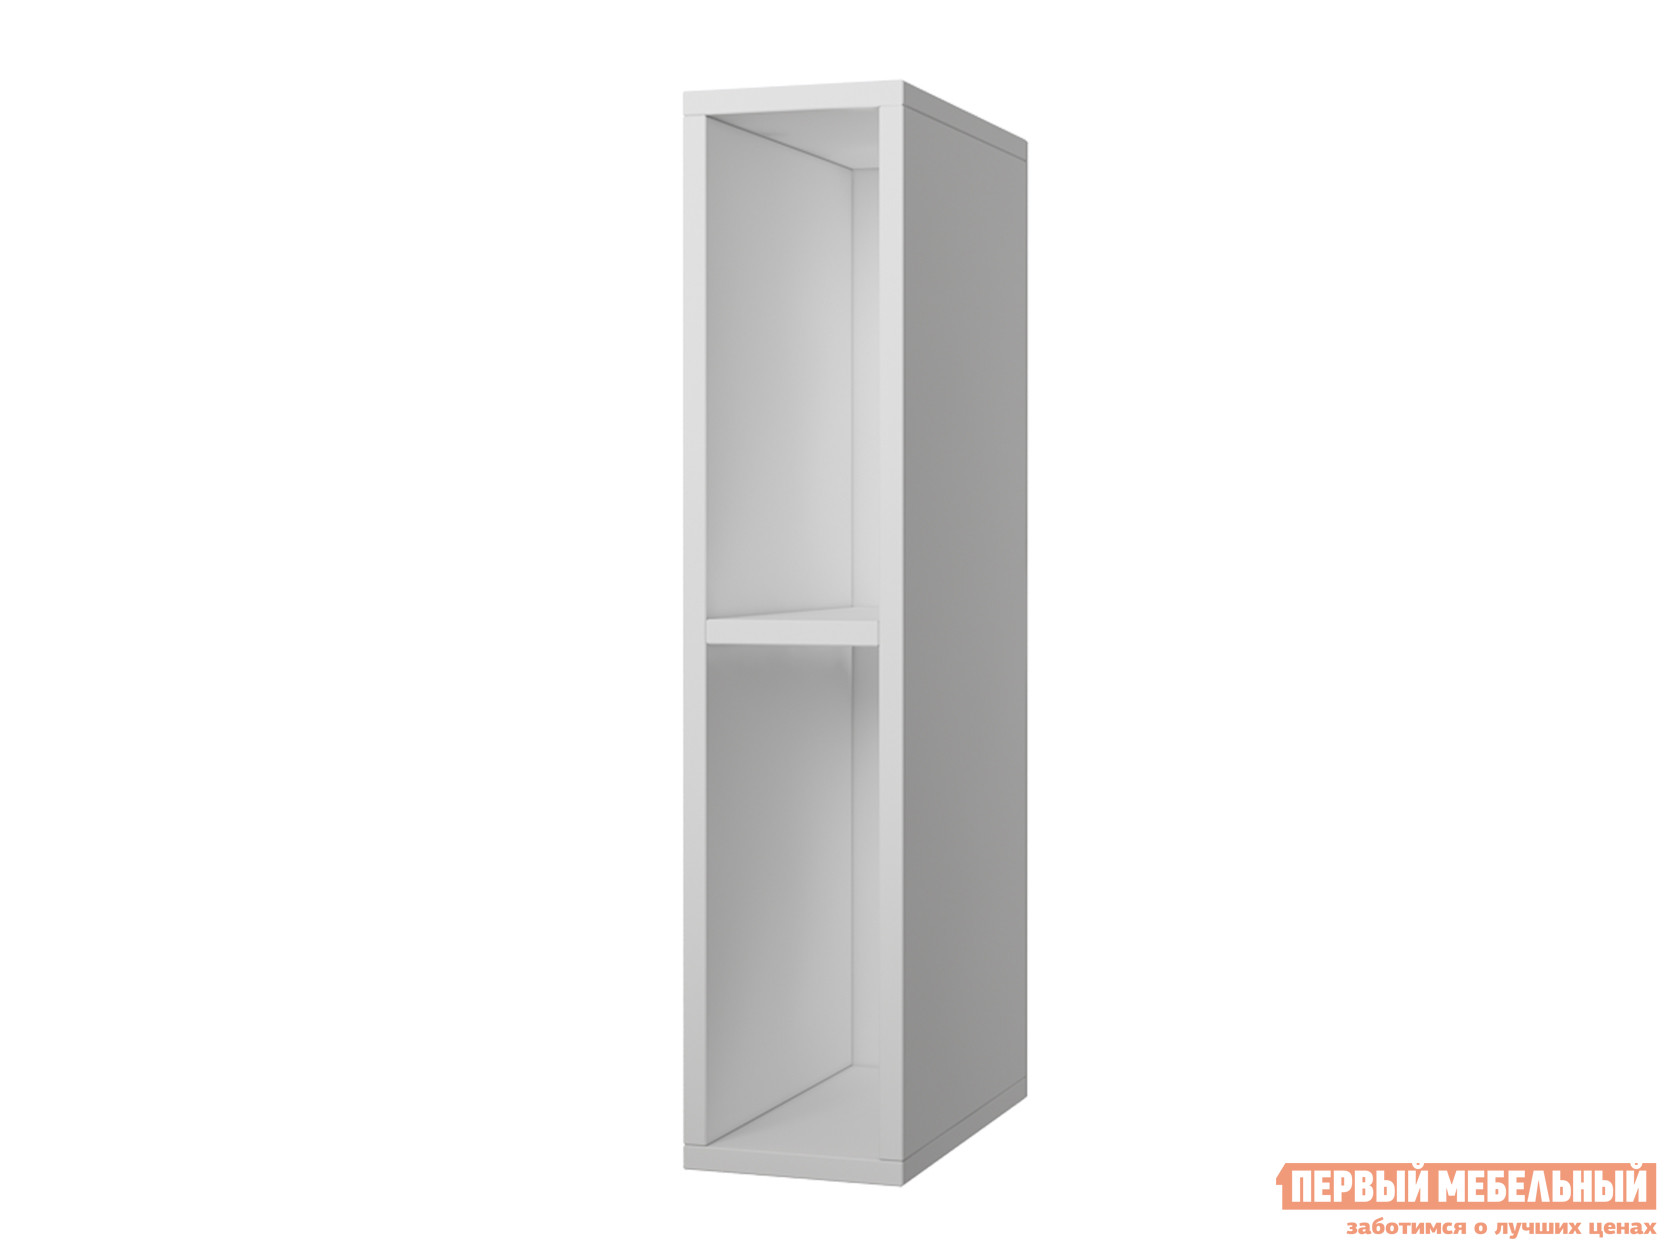 Кухонный модуль  Шкаф открытый 15 см Палермо Белый от Первый Мебельный